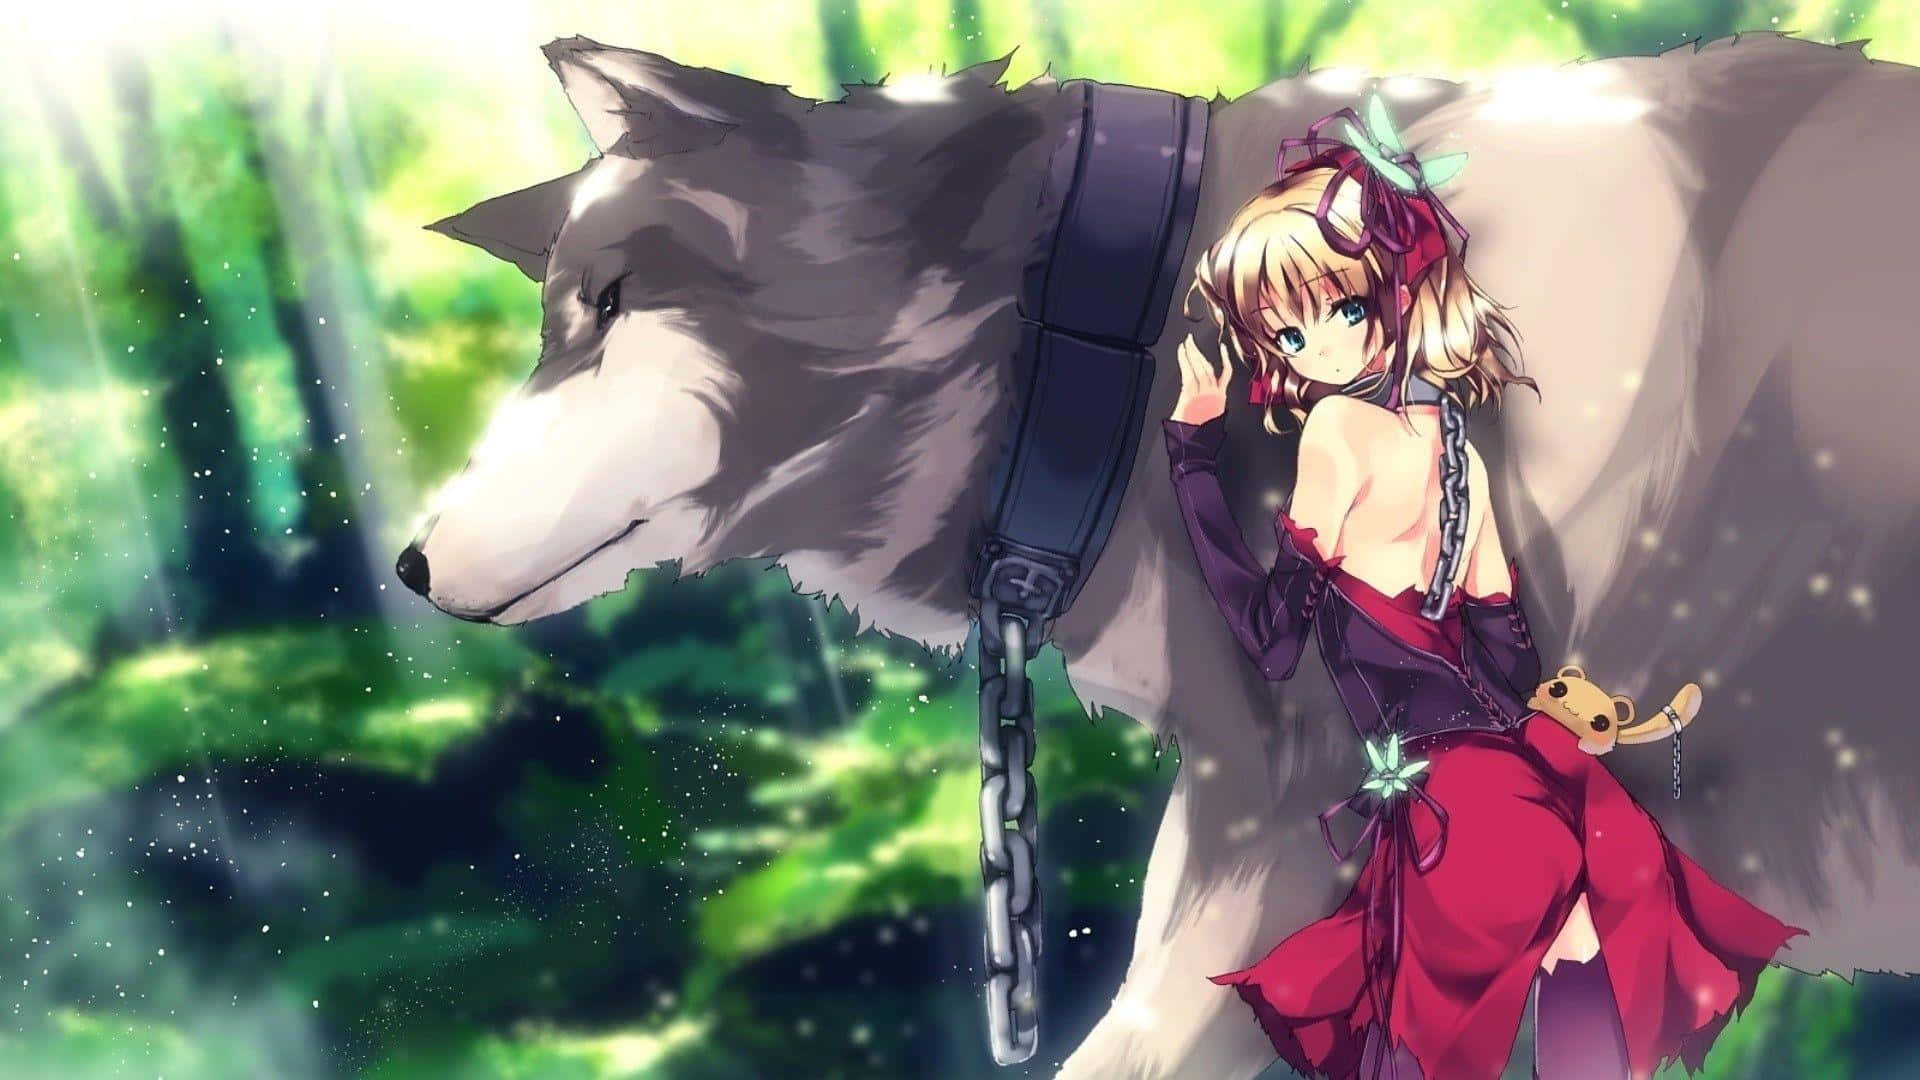 Einniedliches Anime-wolfsmädchen, Das Zwischen Den Bäumen Sitzt Und Bereit Ist, Zuzuschlagen. Wallpaper